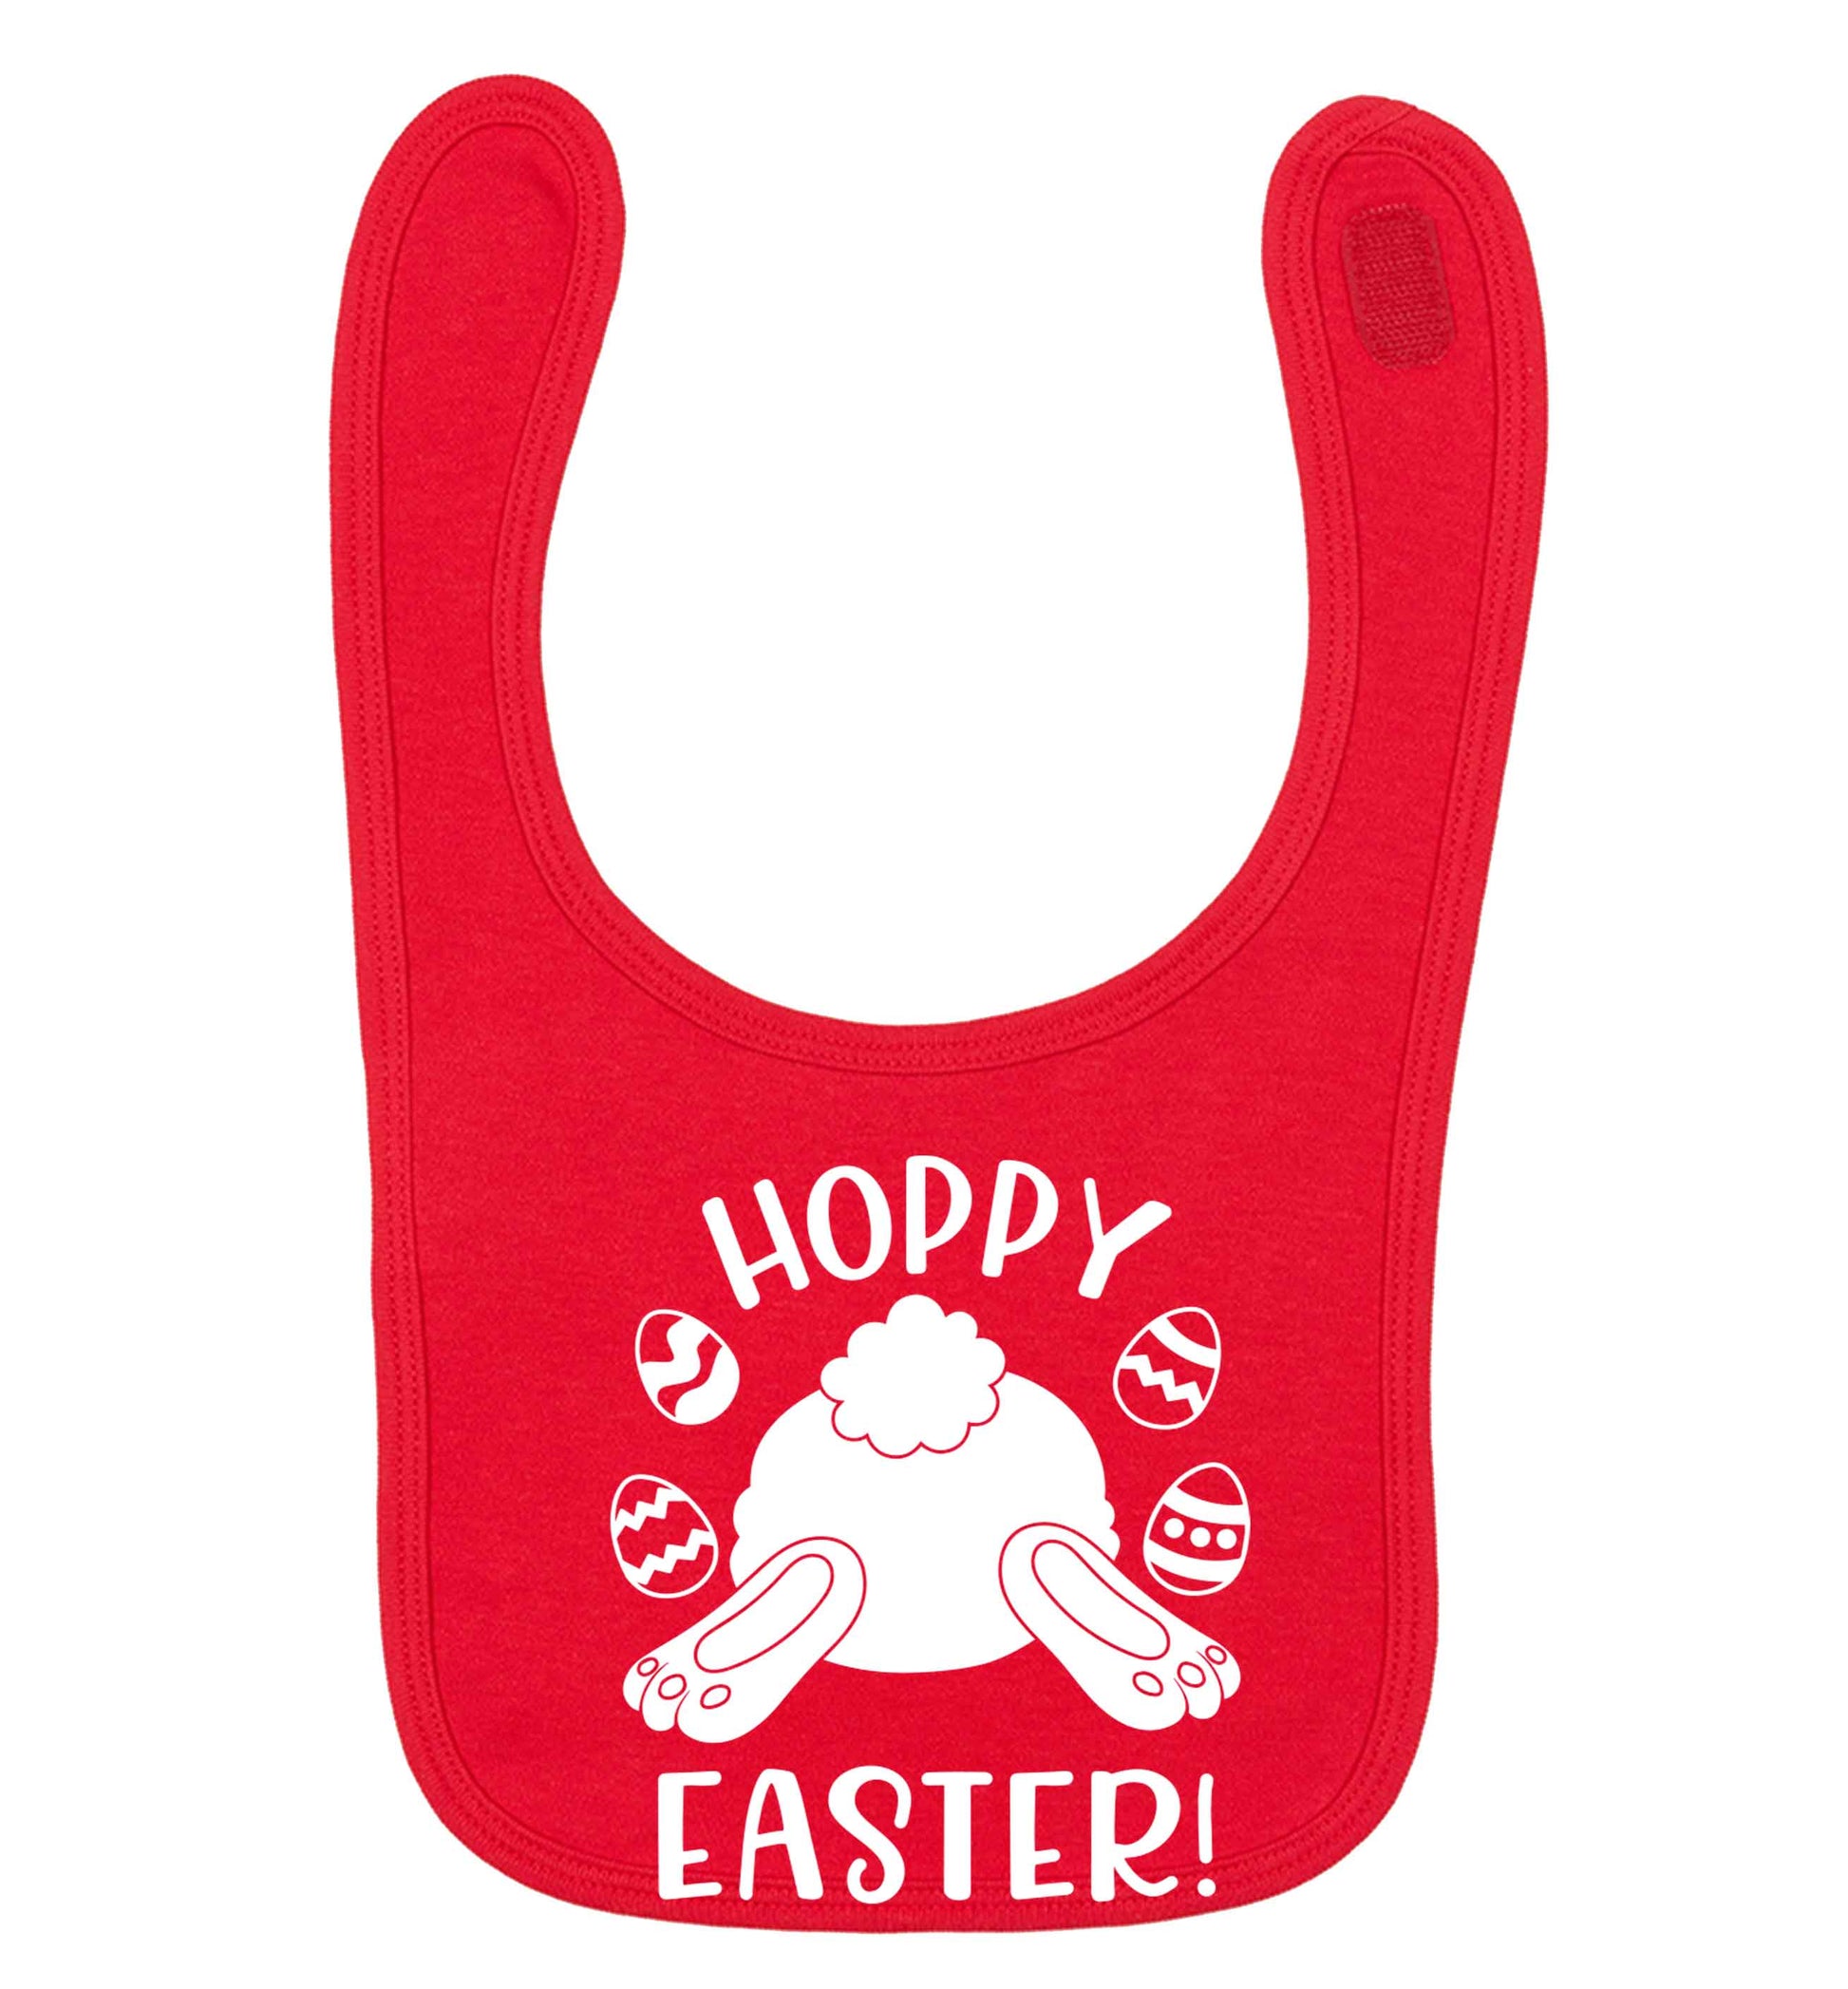 Hoppy Easter red baby bib